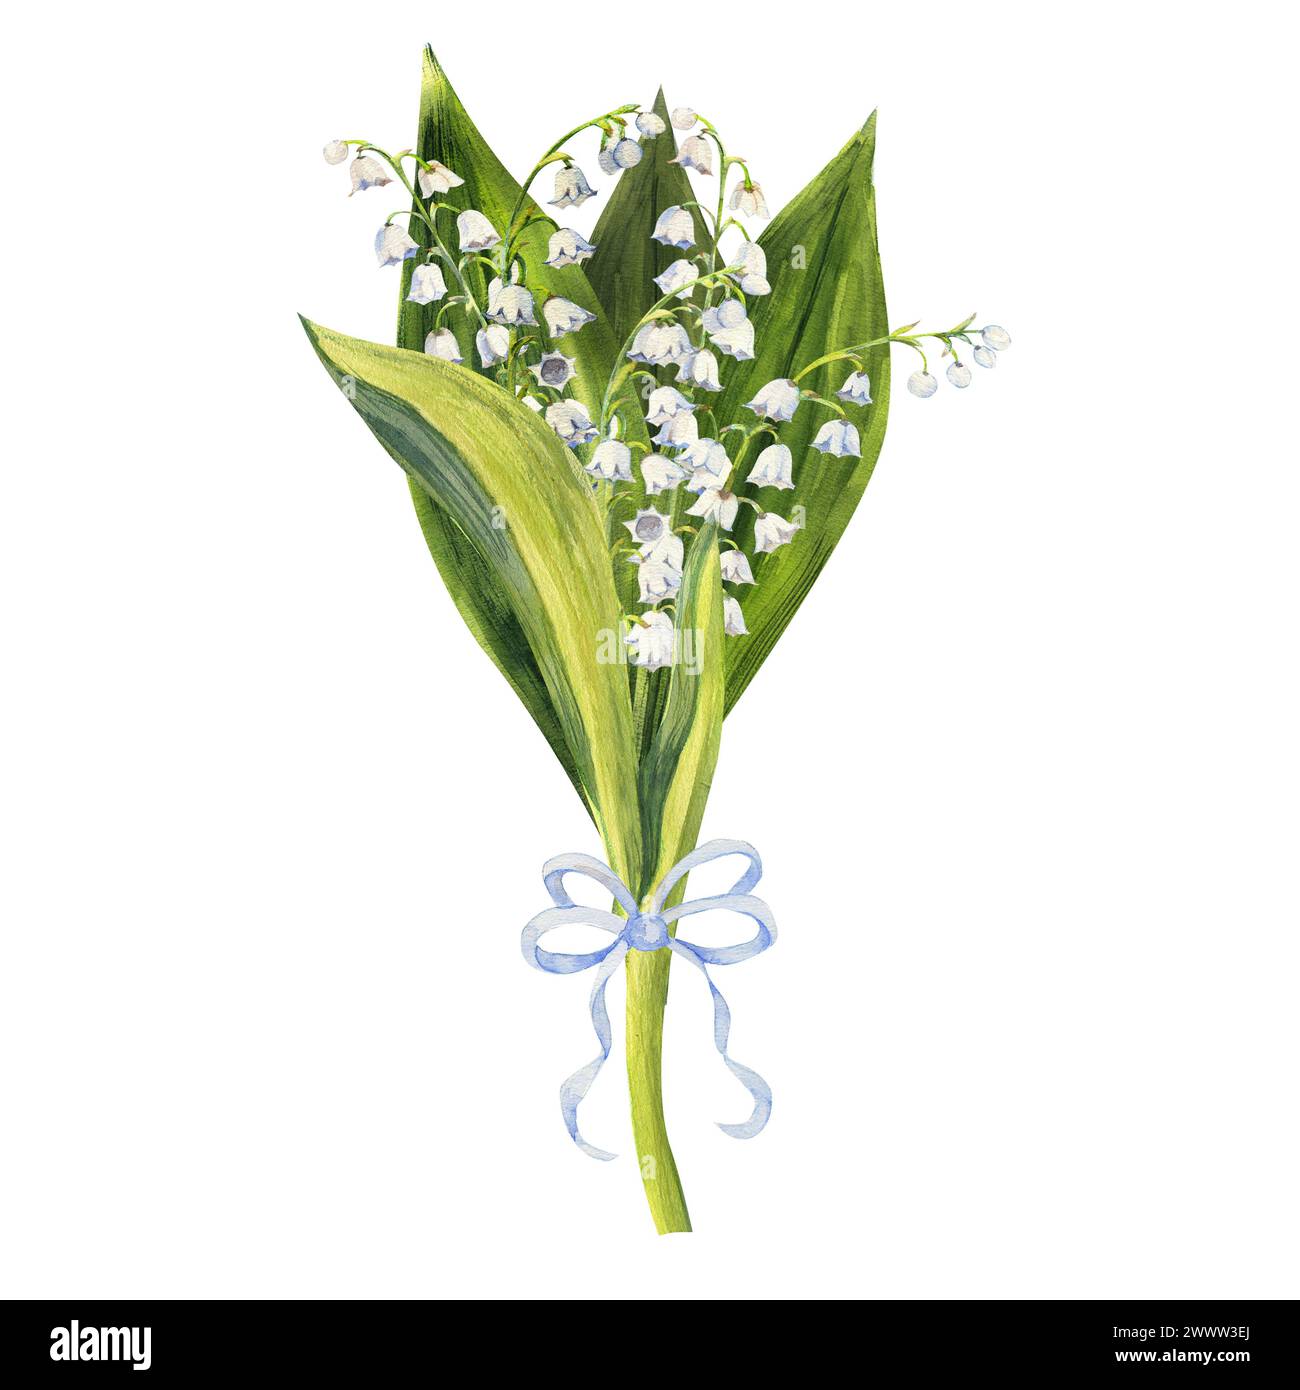 Bouquet de fleurs de lis de la vallée, dessiné à la main. Illustration aquarelle de fleurs de printemps. Banque D'Images